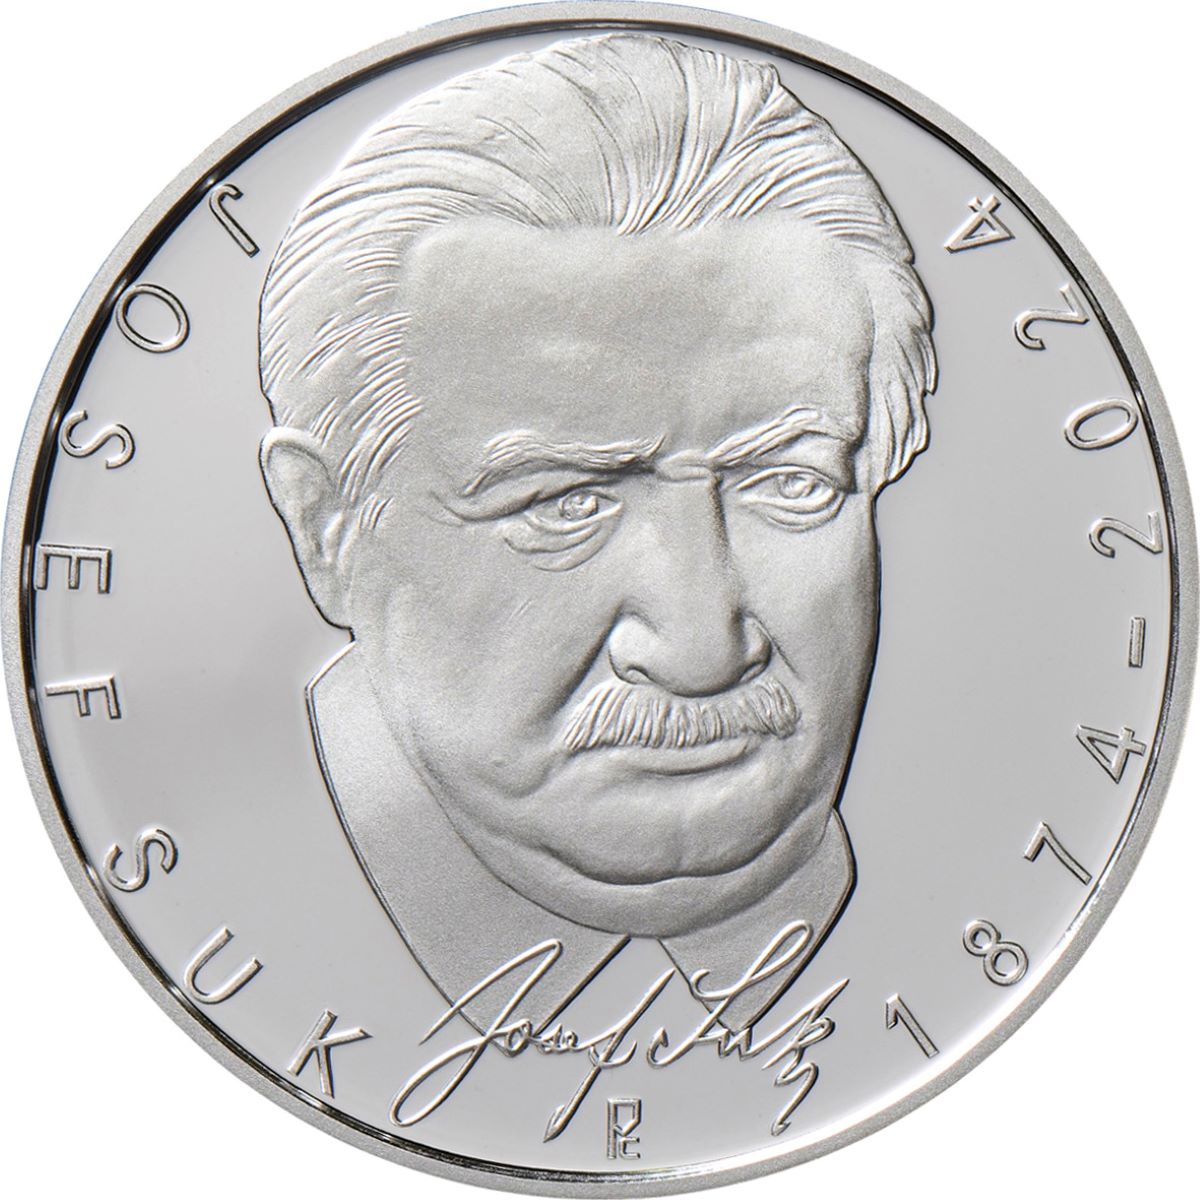 Pamětní mince ke 150. výročí narození Josefa Suka, rub (zdroj Česká národní banka)